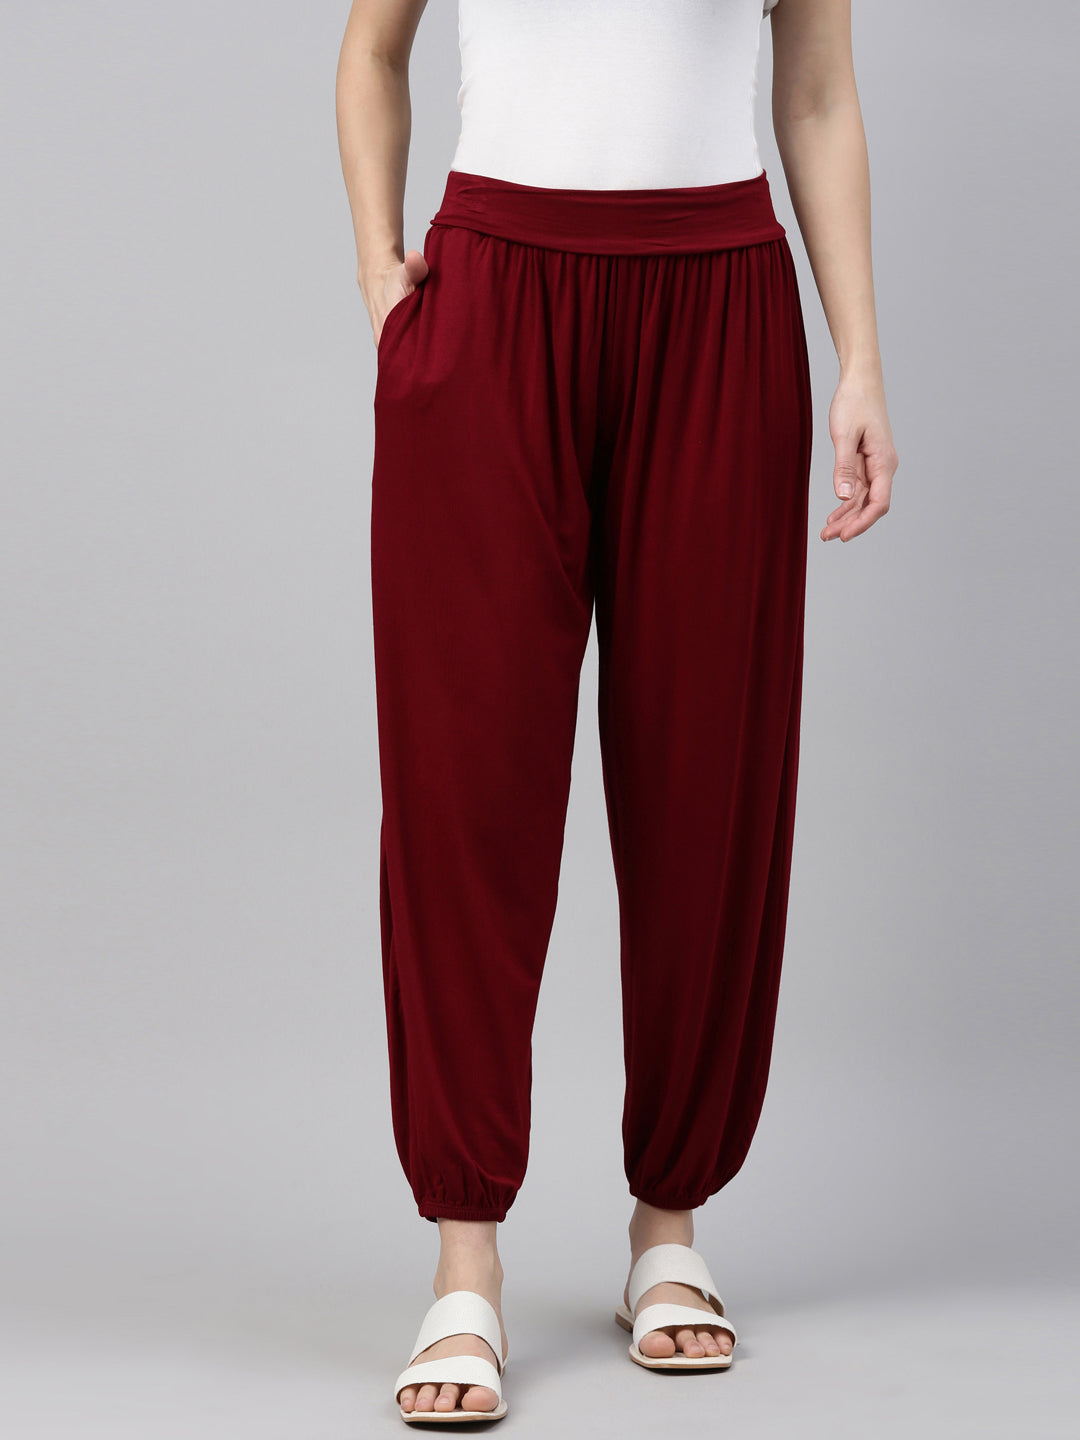 Shop Womens Solid Cherry Comfort Fit Cotton Pants Online  Go Colors